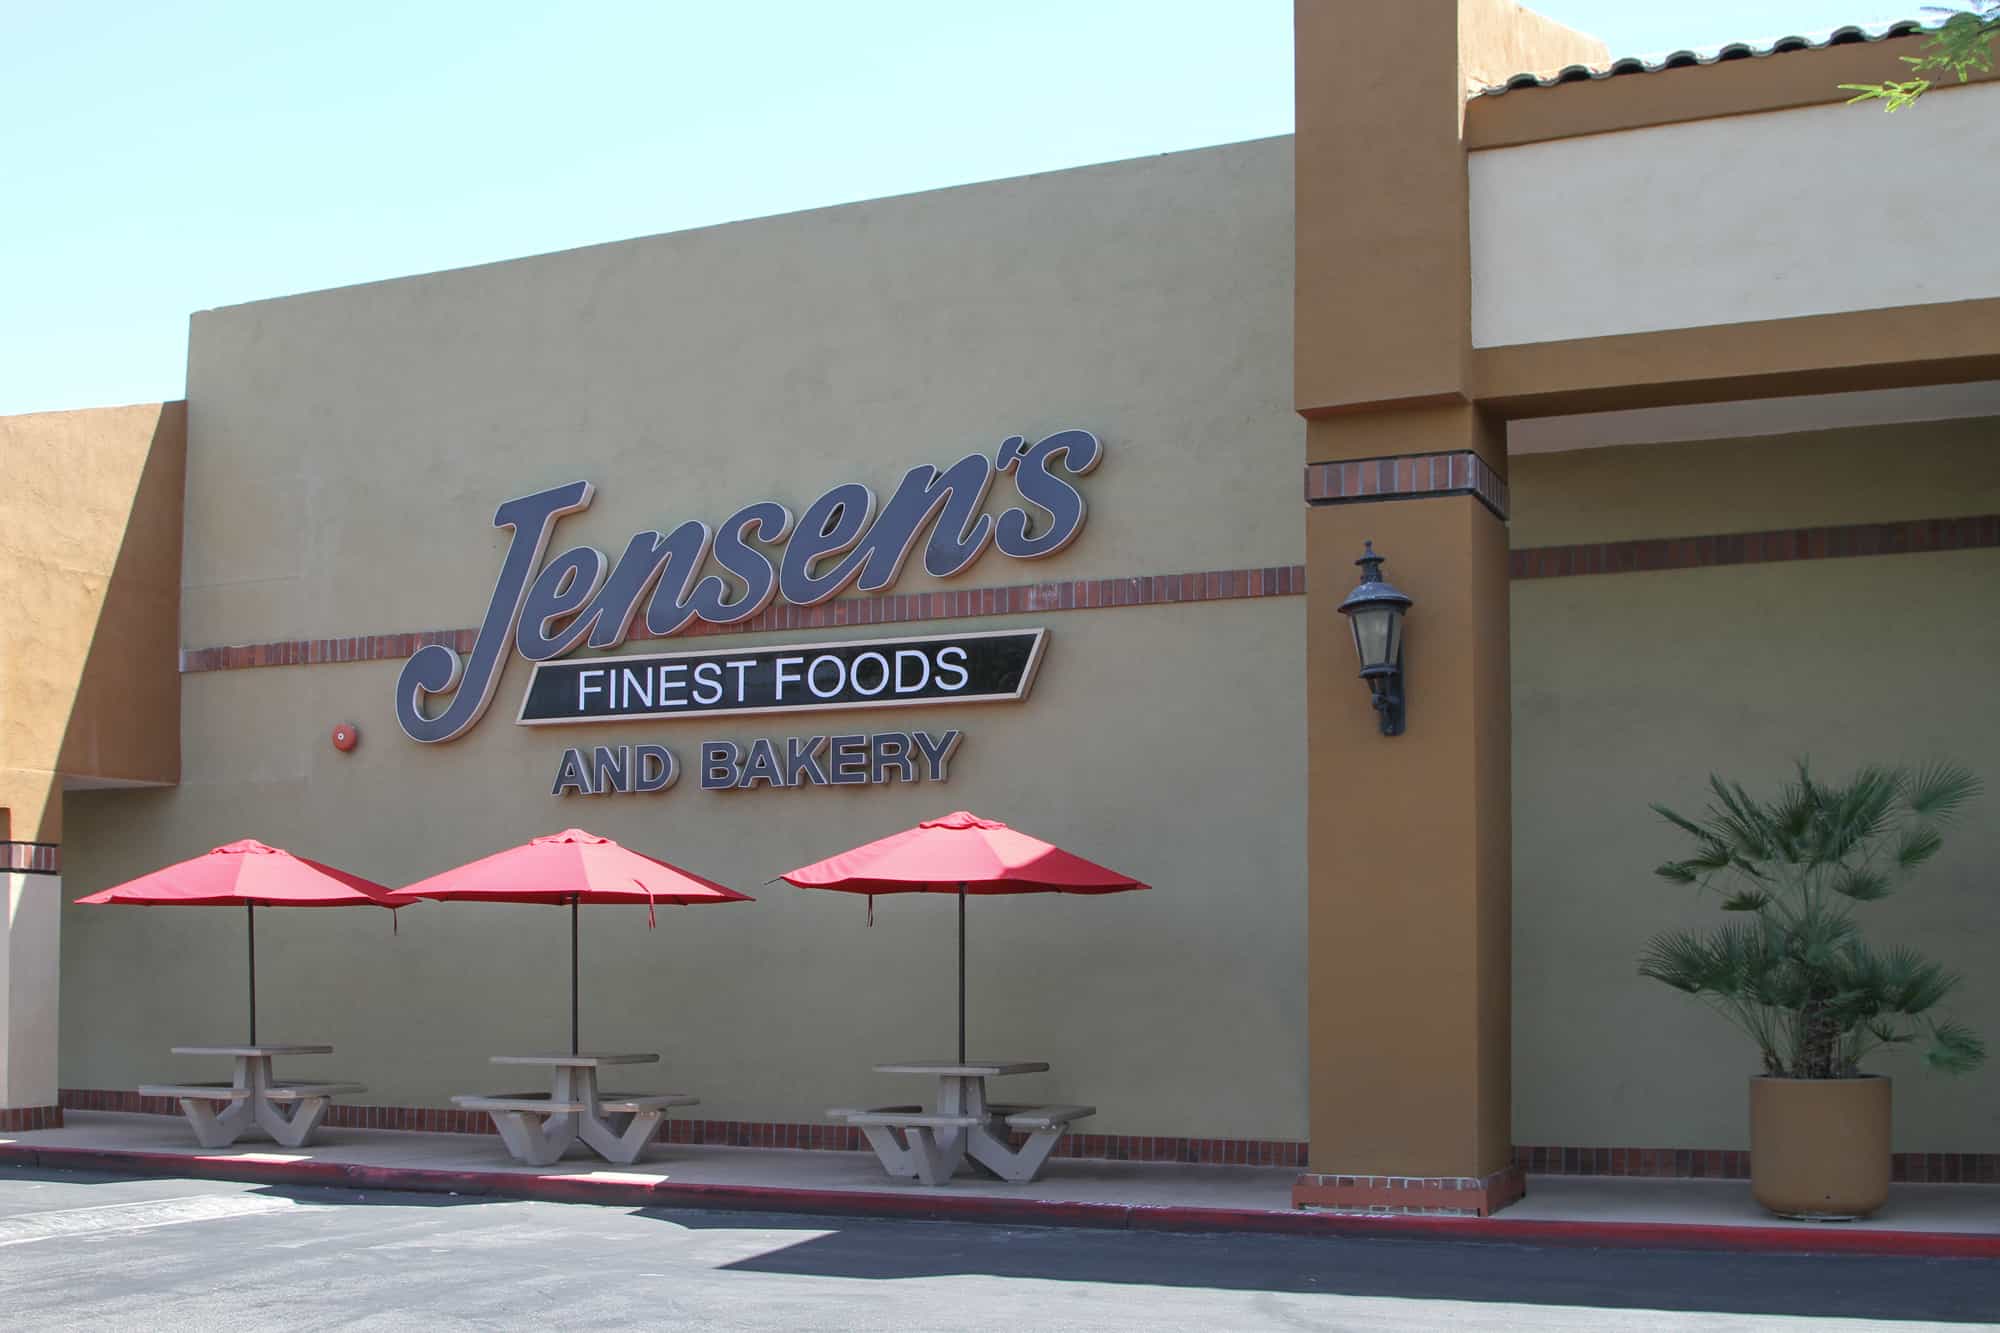 (c) Jensensfoods.com